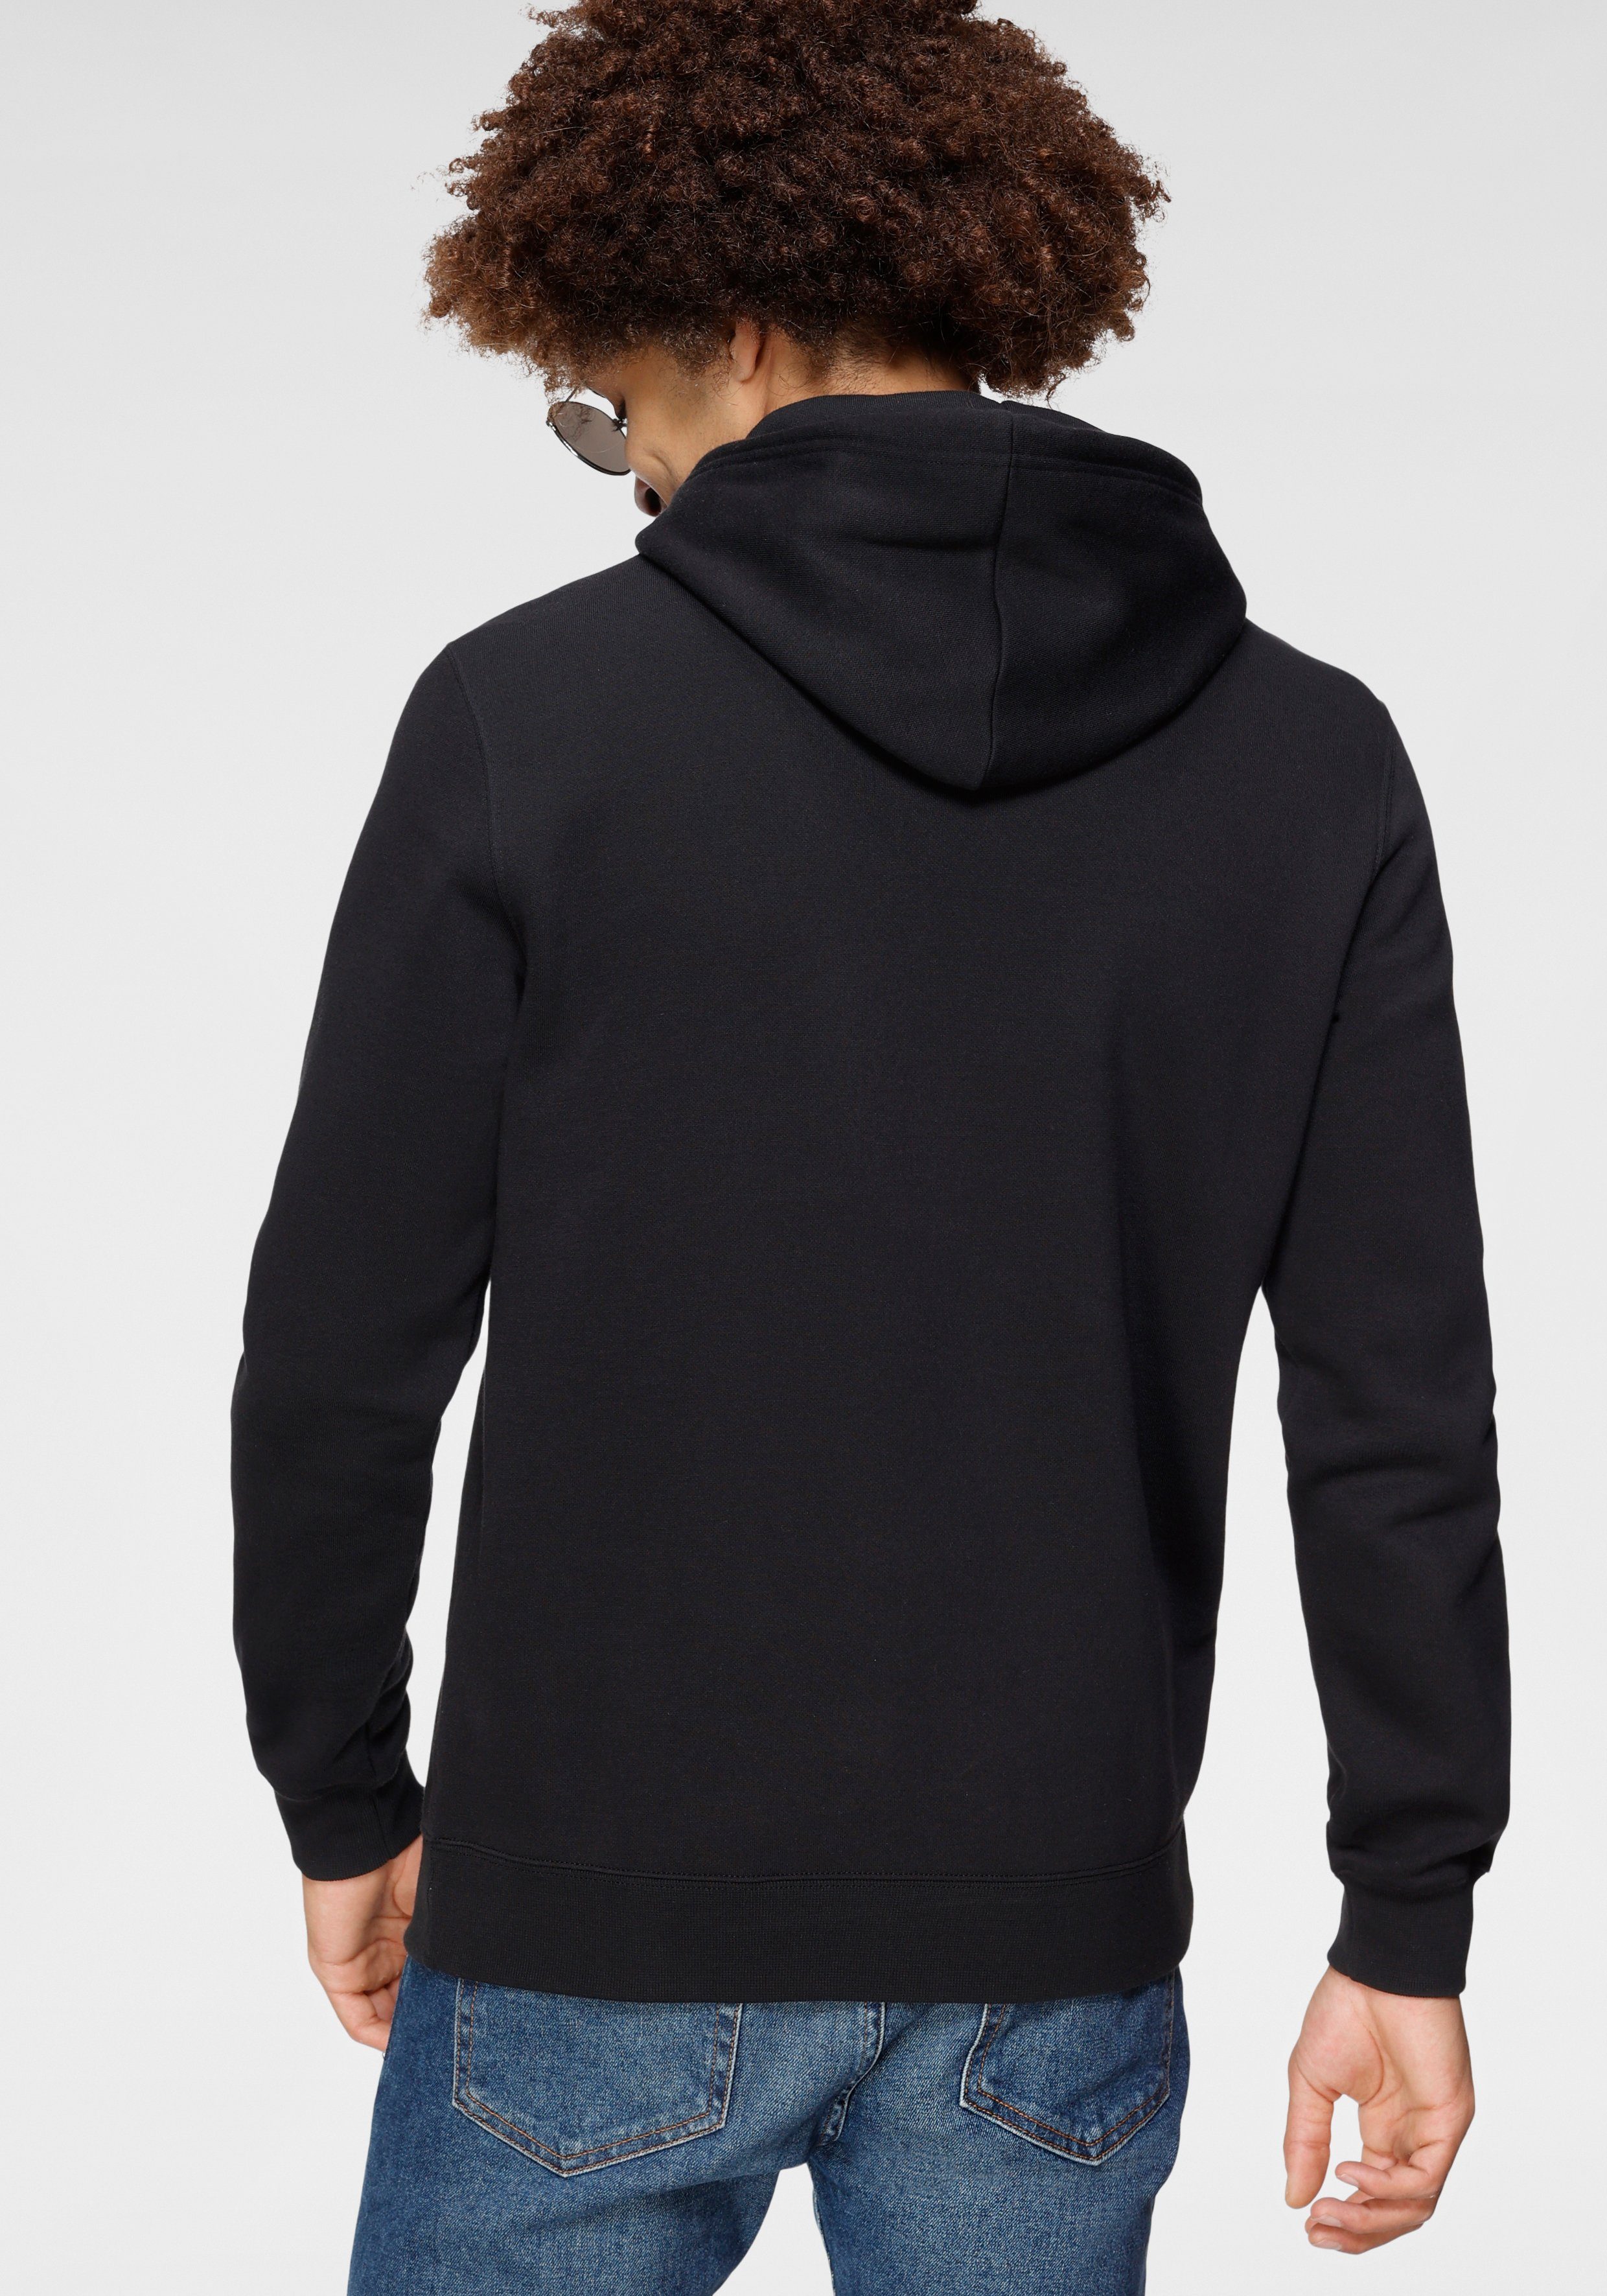 Hooded schwarz Champion Sweatshirt Kapuzensweatshirt